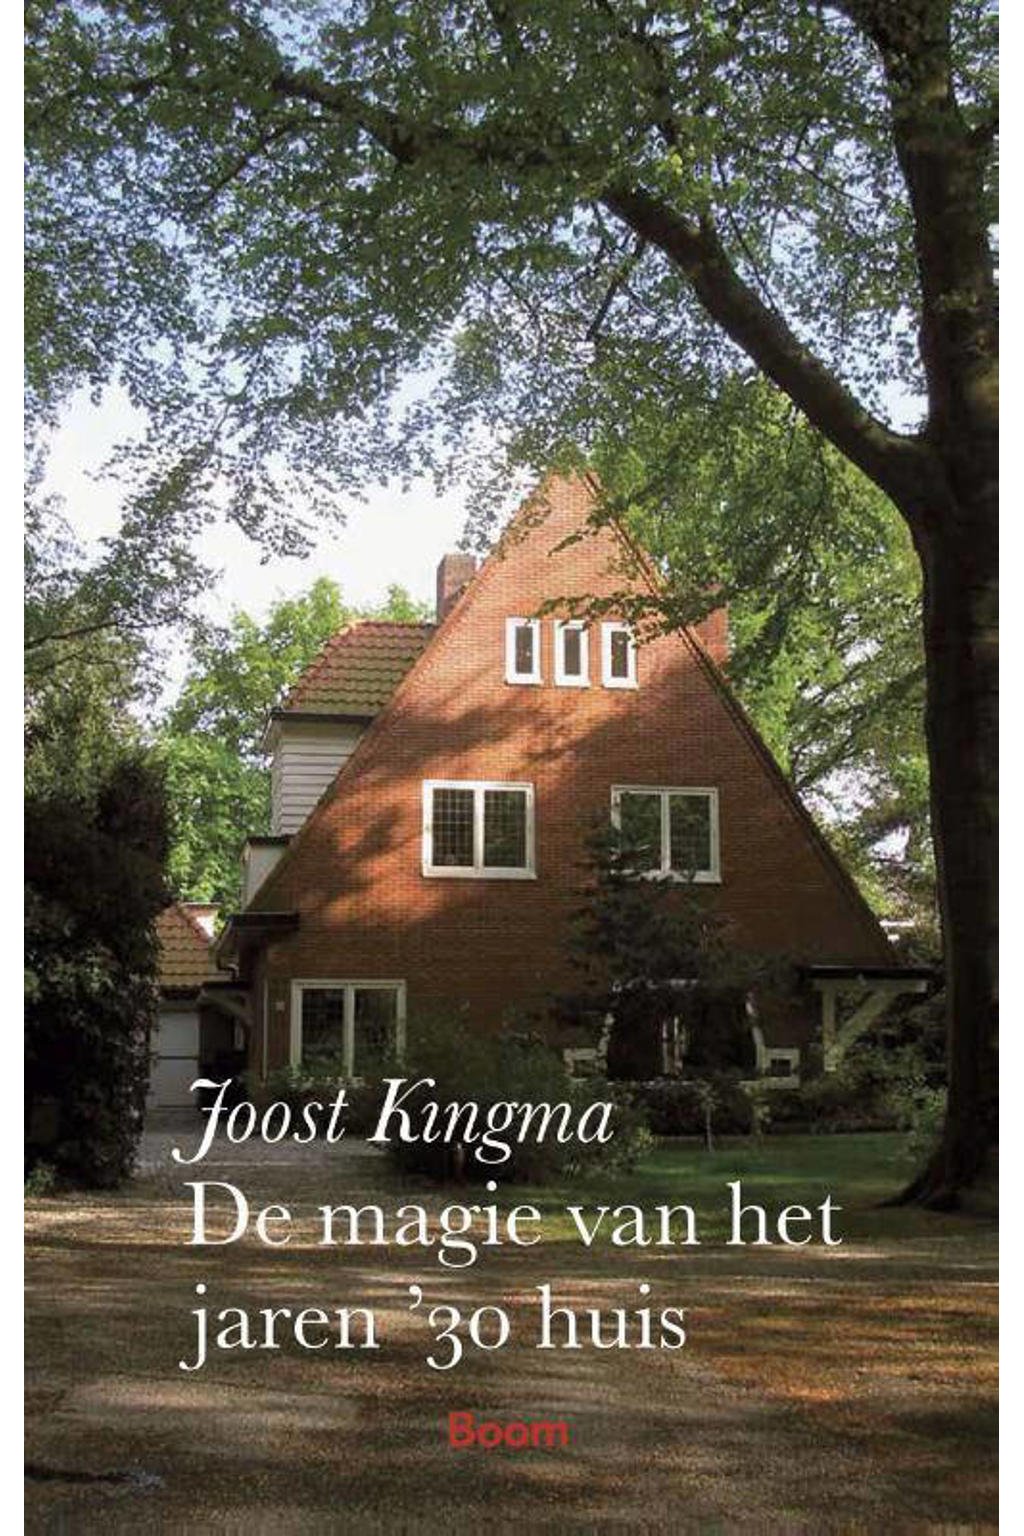 De magie van het jaren '30 huis - Joost Kingma